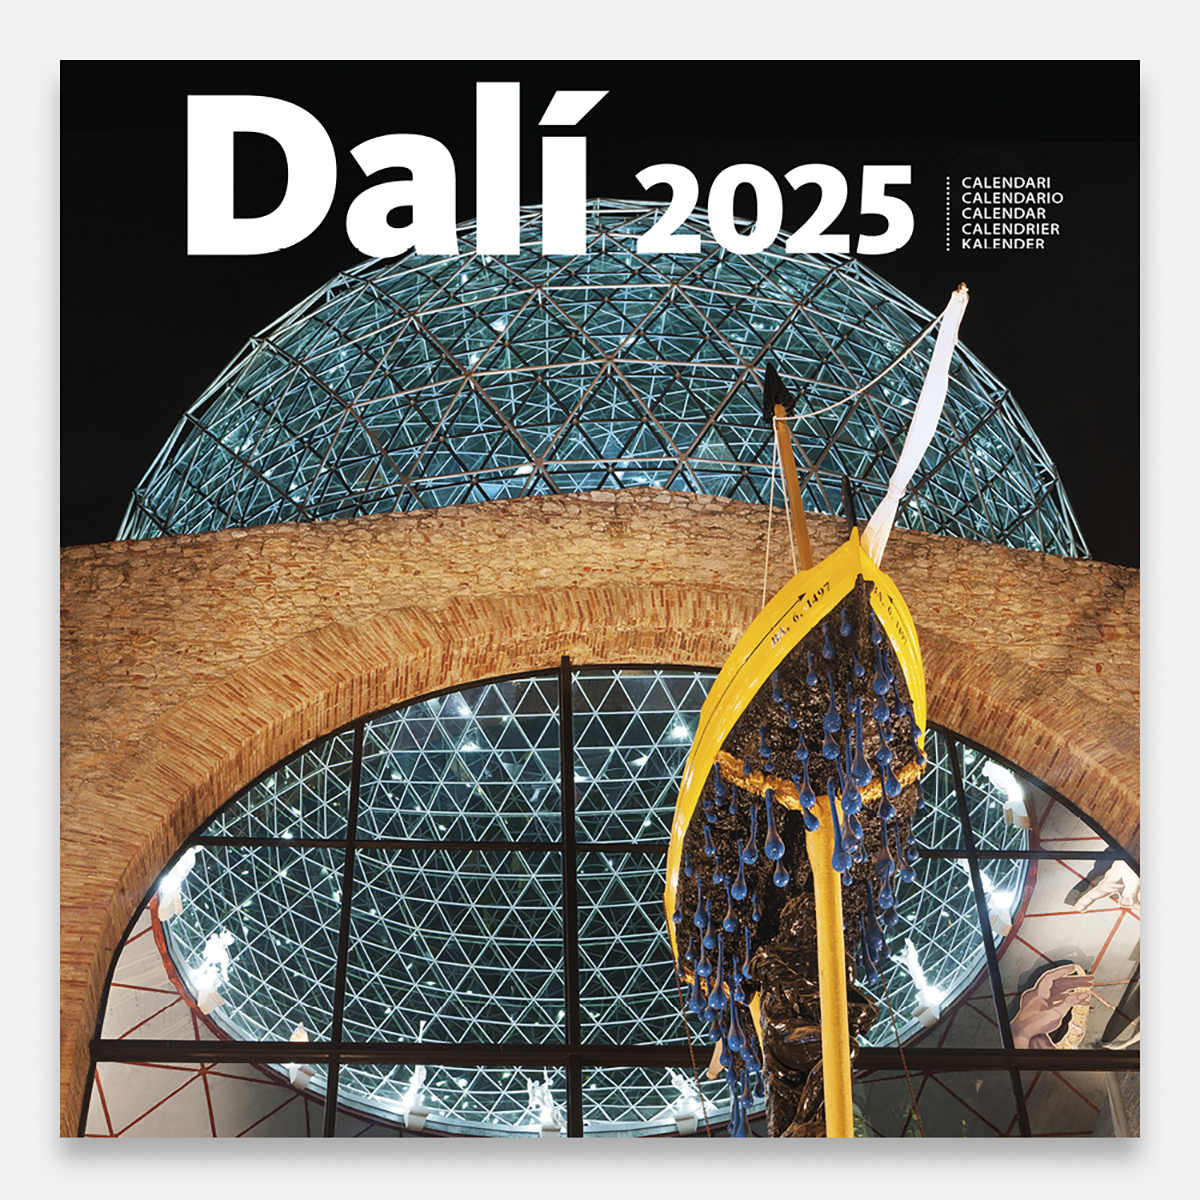 Calendari 2025 Dalí 25dg calendario pared 2025 salvador dali